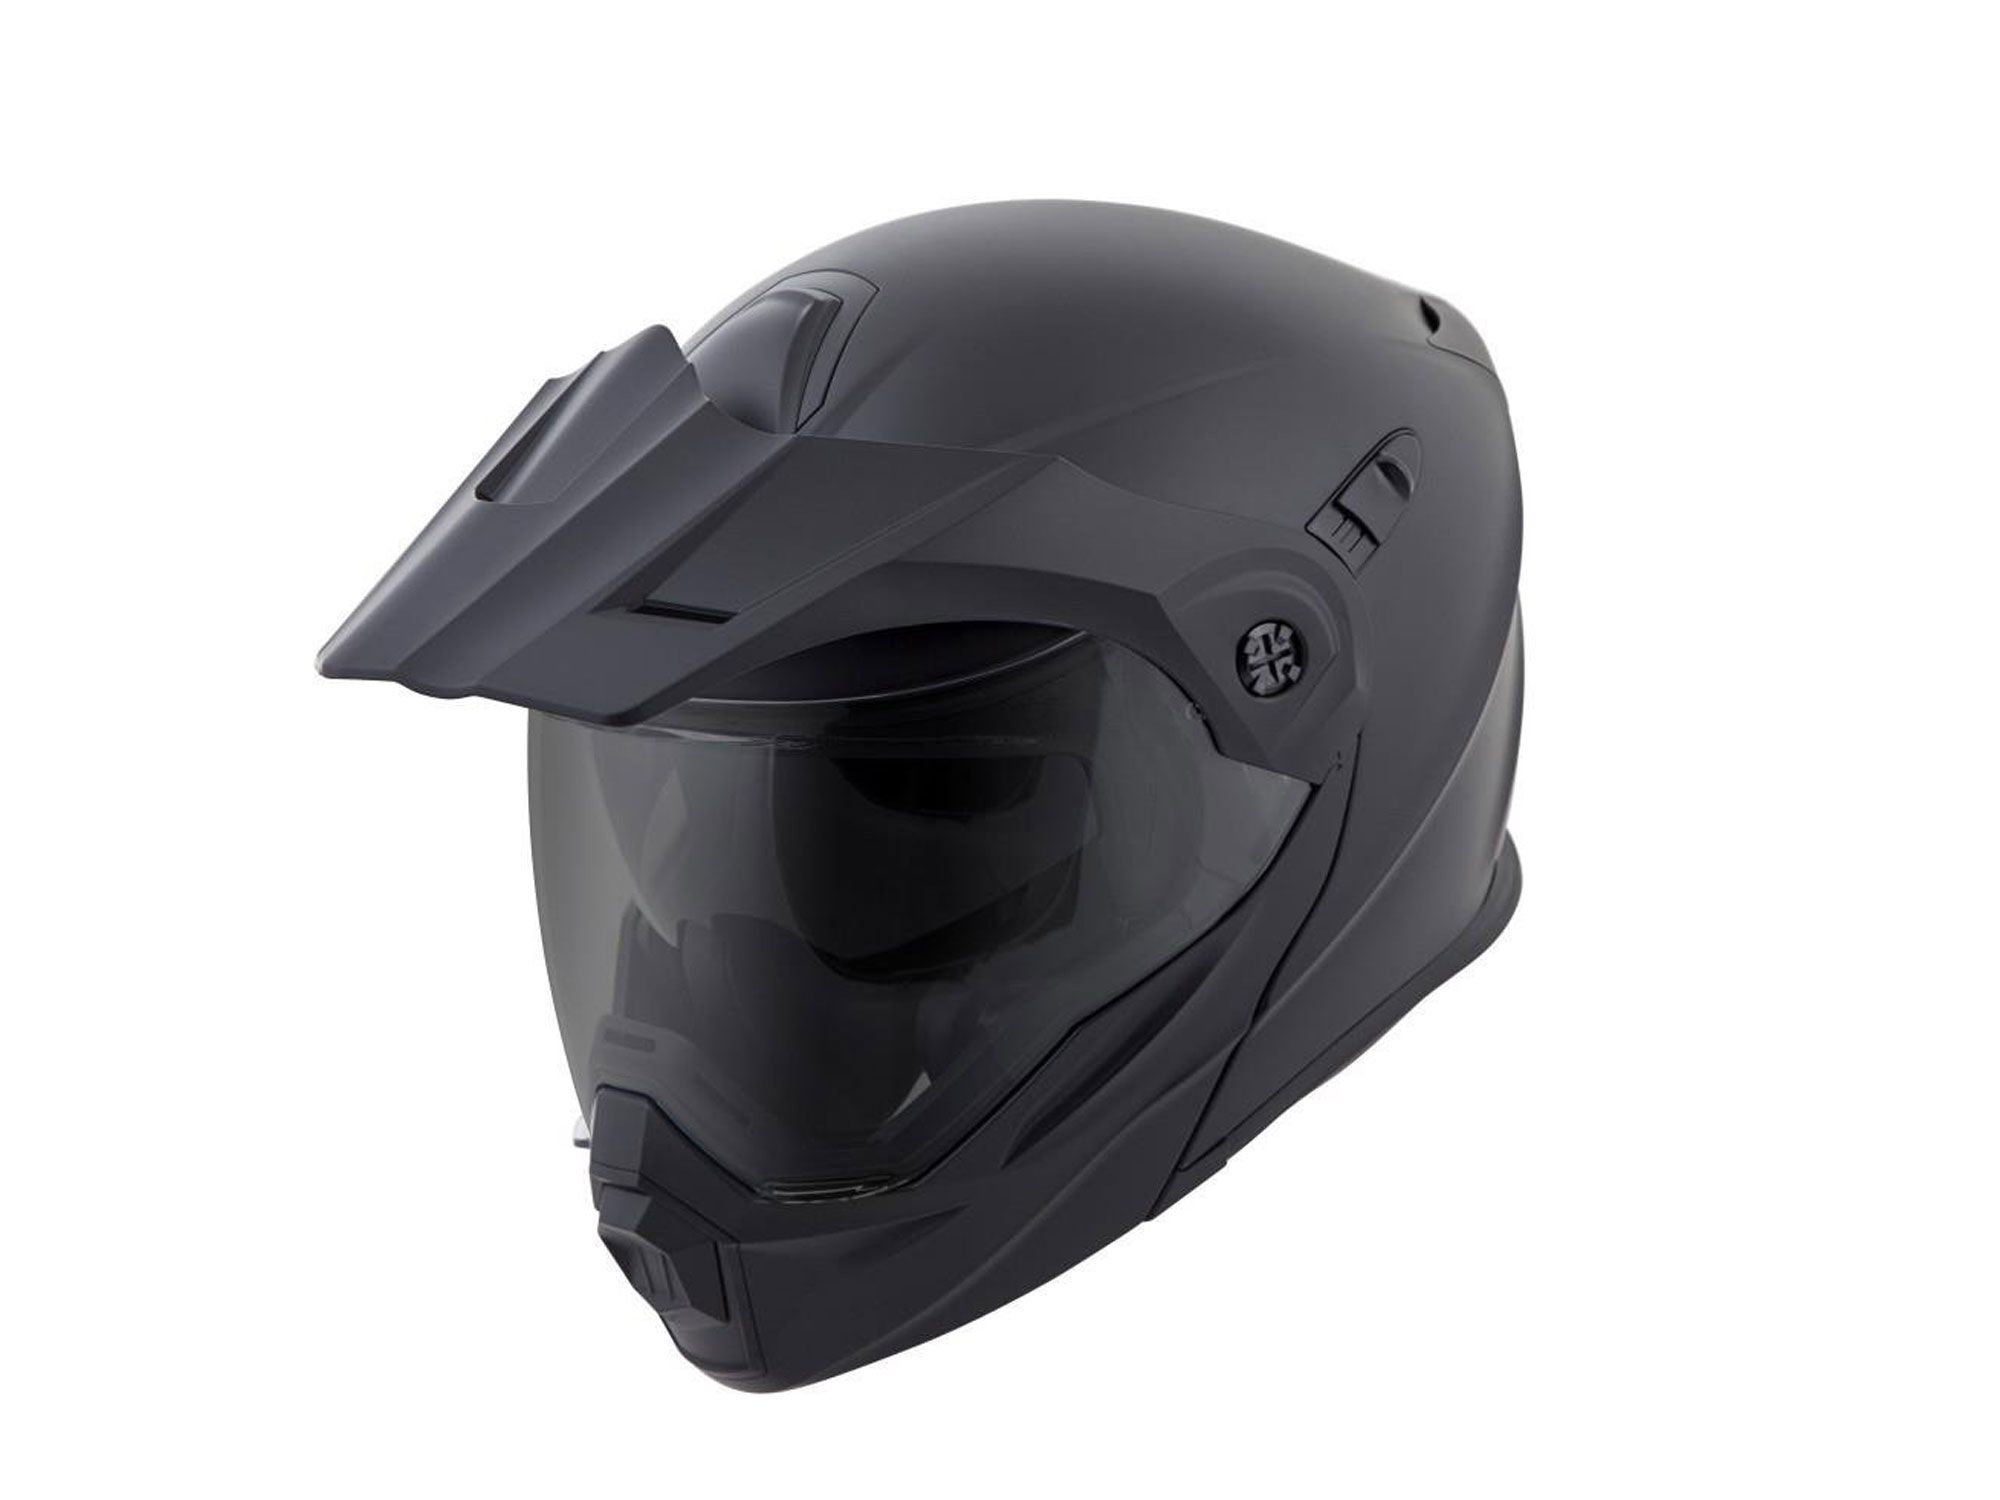 Z1R MIPS Range Helmet Dual Visor Full Face DOT for Street Motorcycle Riding 